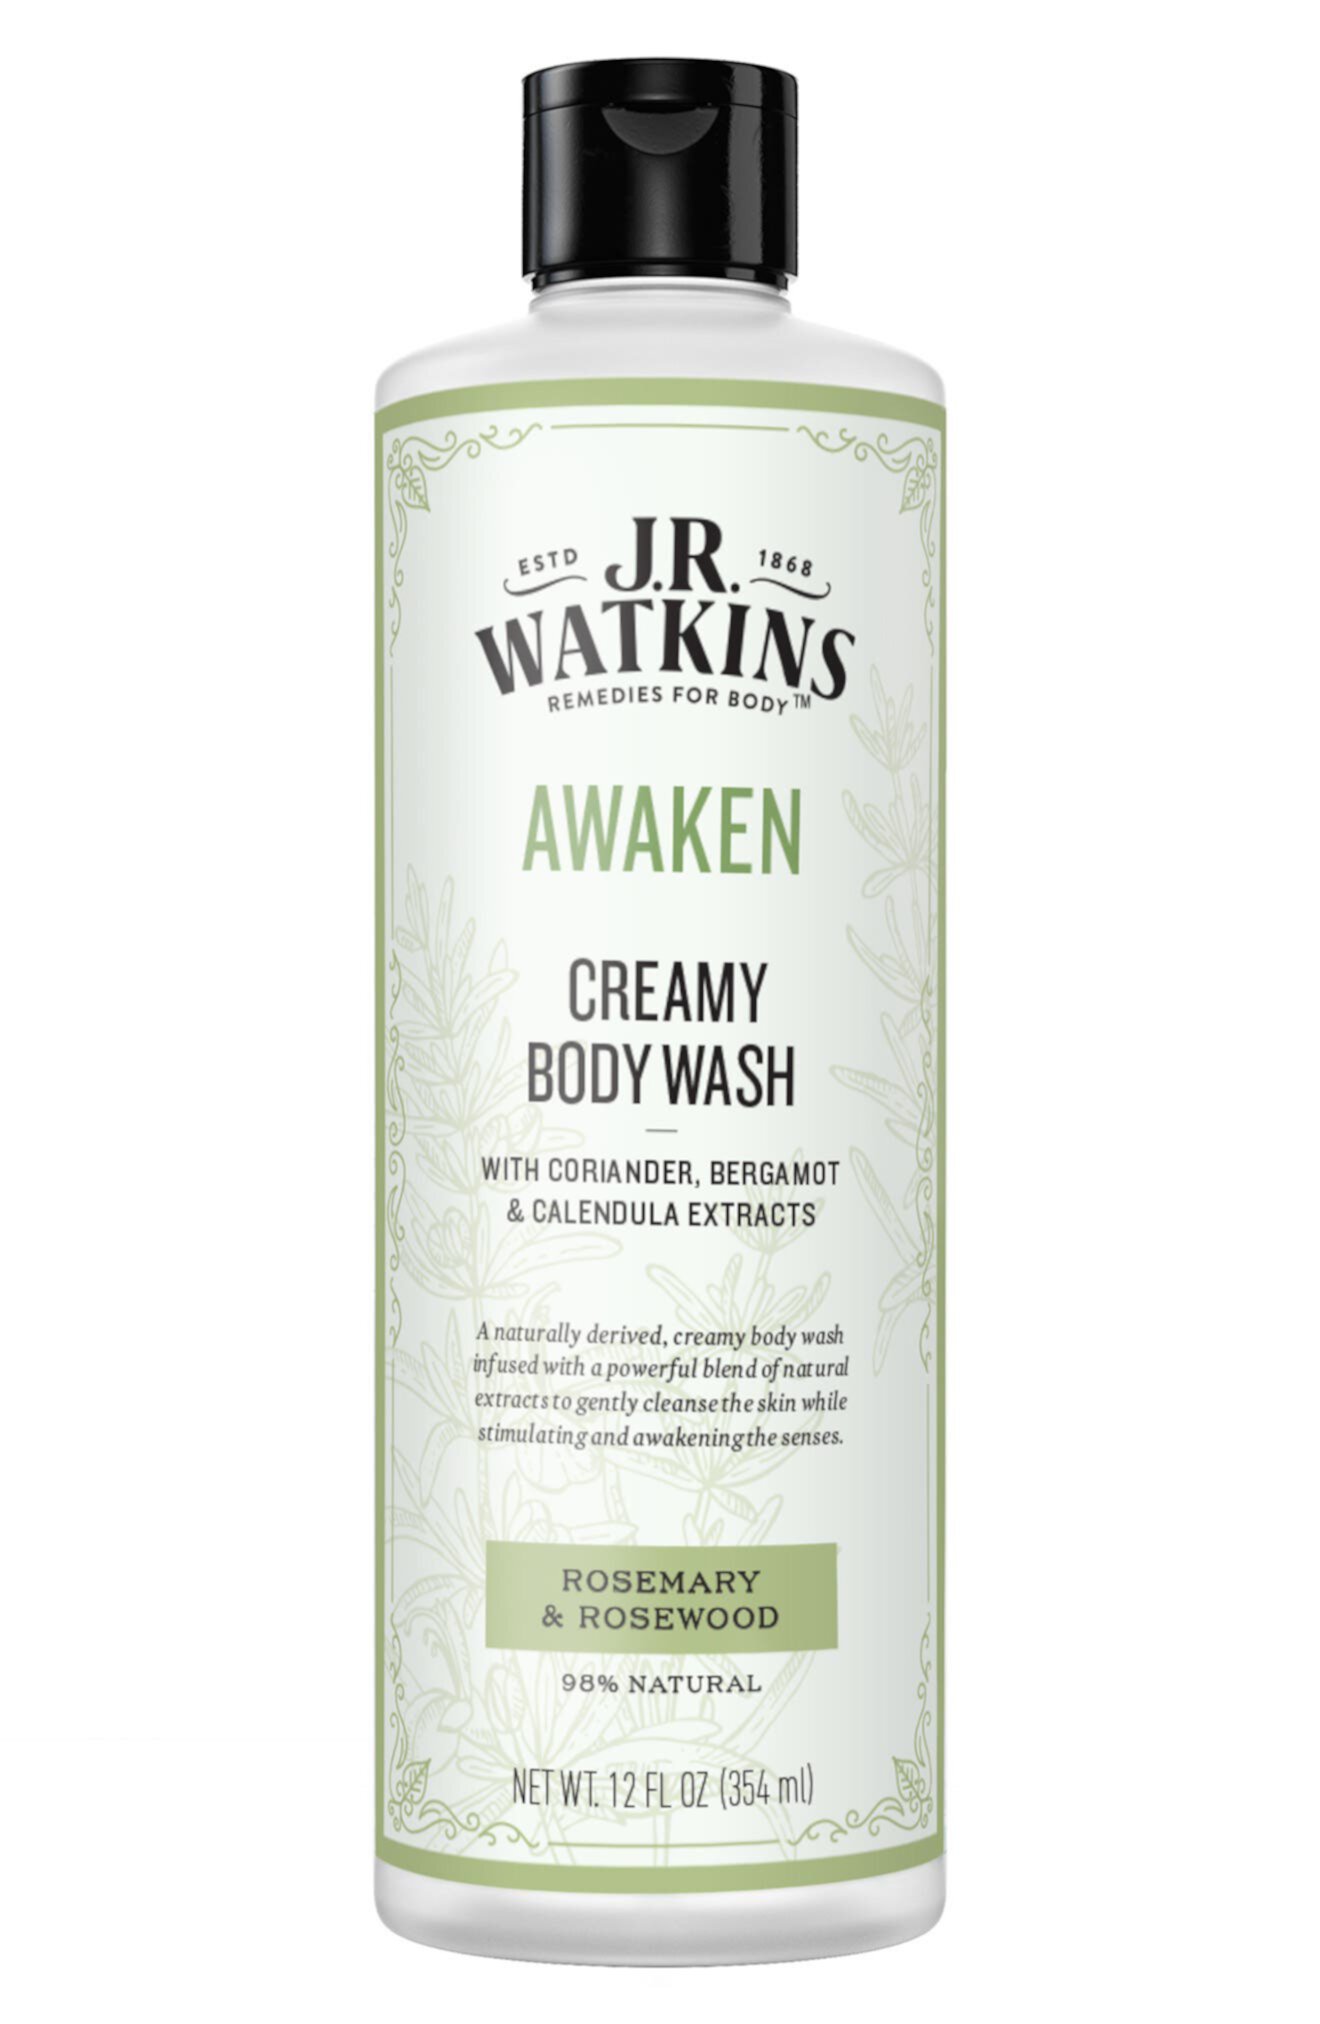 Awaken Кремовый гель для душа - 12 эт. унция J.R. WATKINS REMEDIES FOR BODY